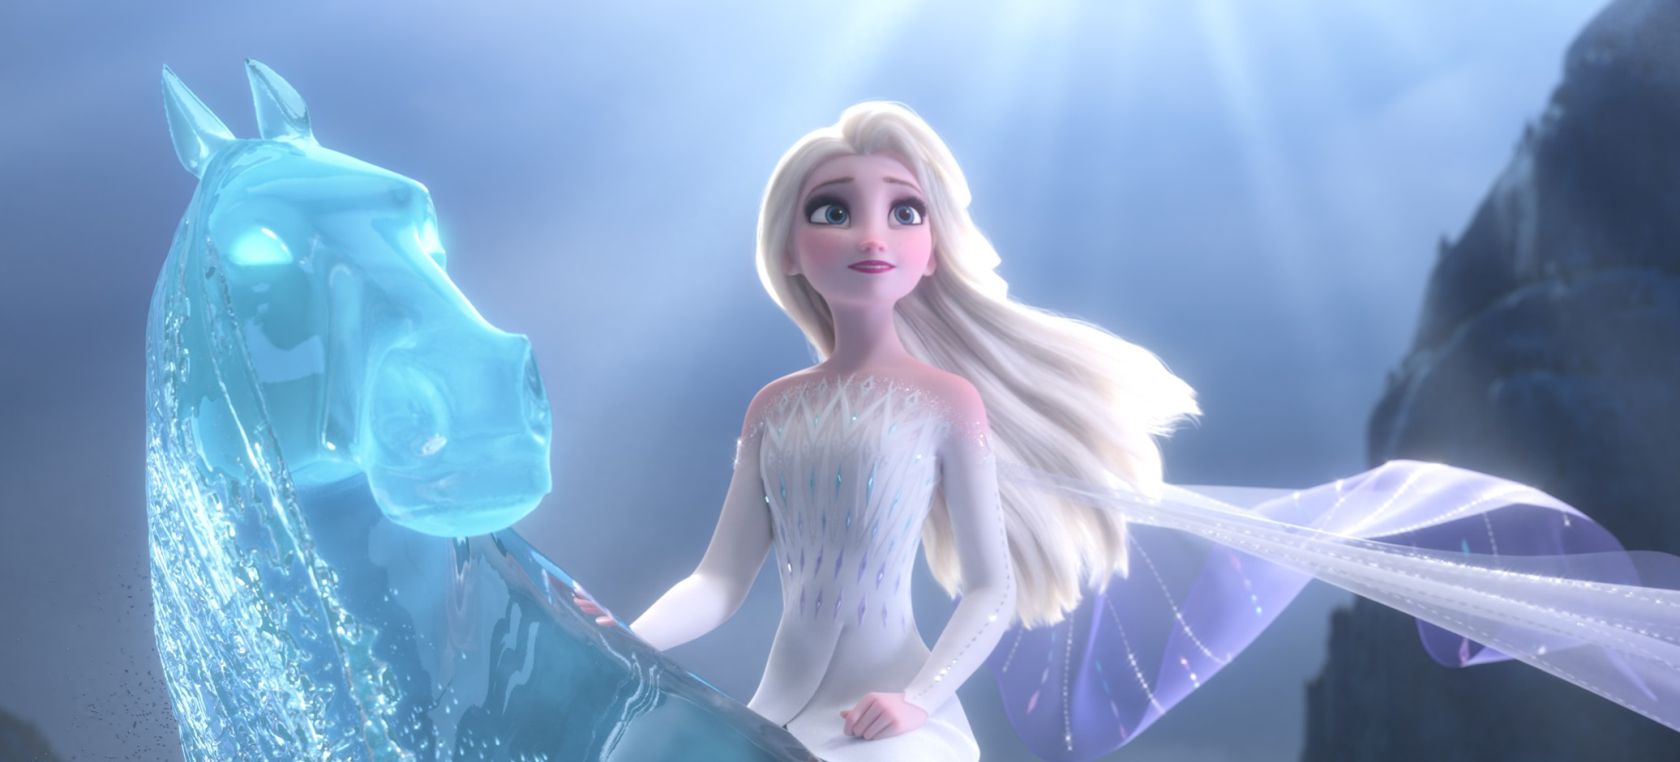 La teoría viral sobre ‘Frozen 2’: Elsa está muerta al final de la película